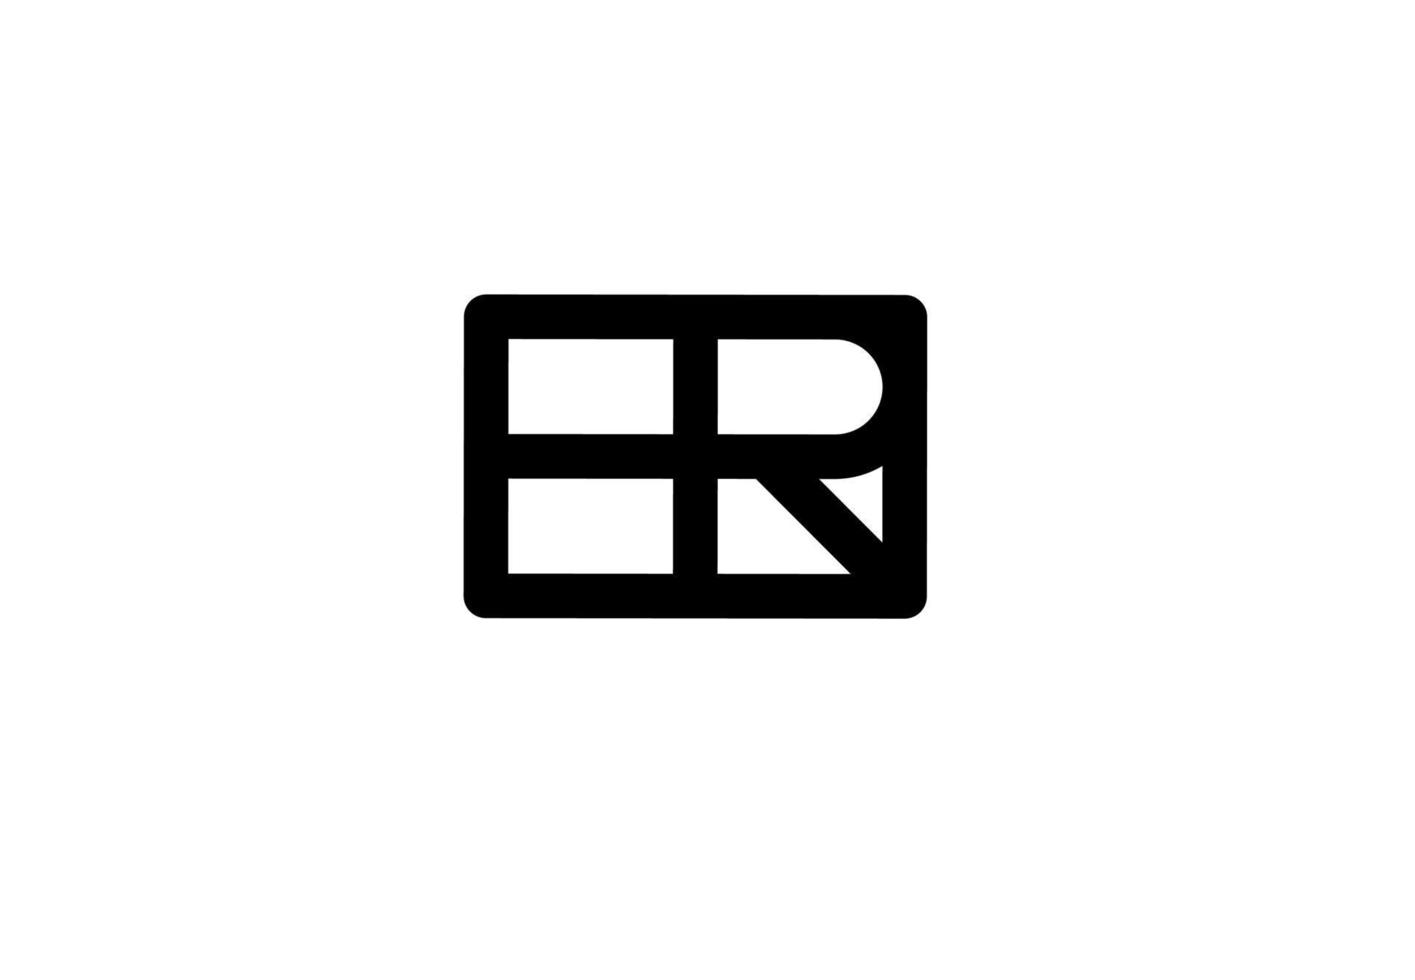 hr rh eh eh logo della lettera iniziale isolato su sfondo bianco vettore